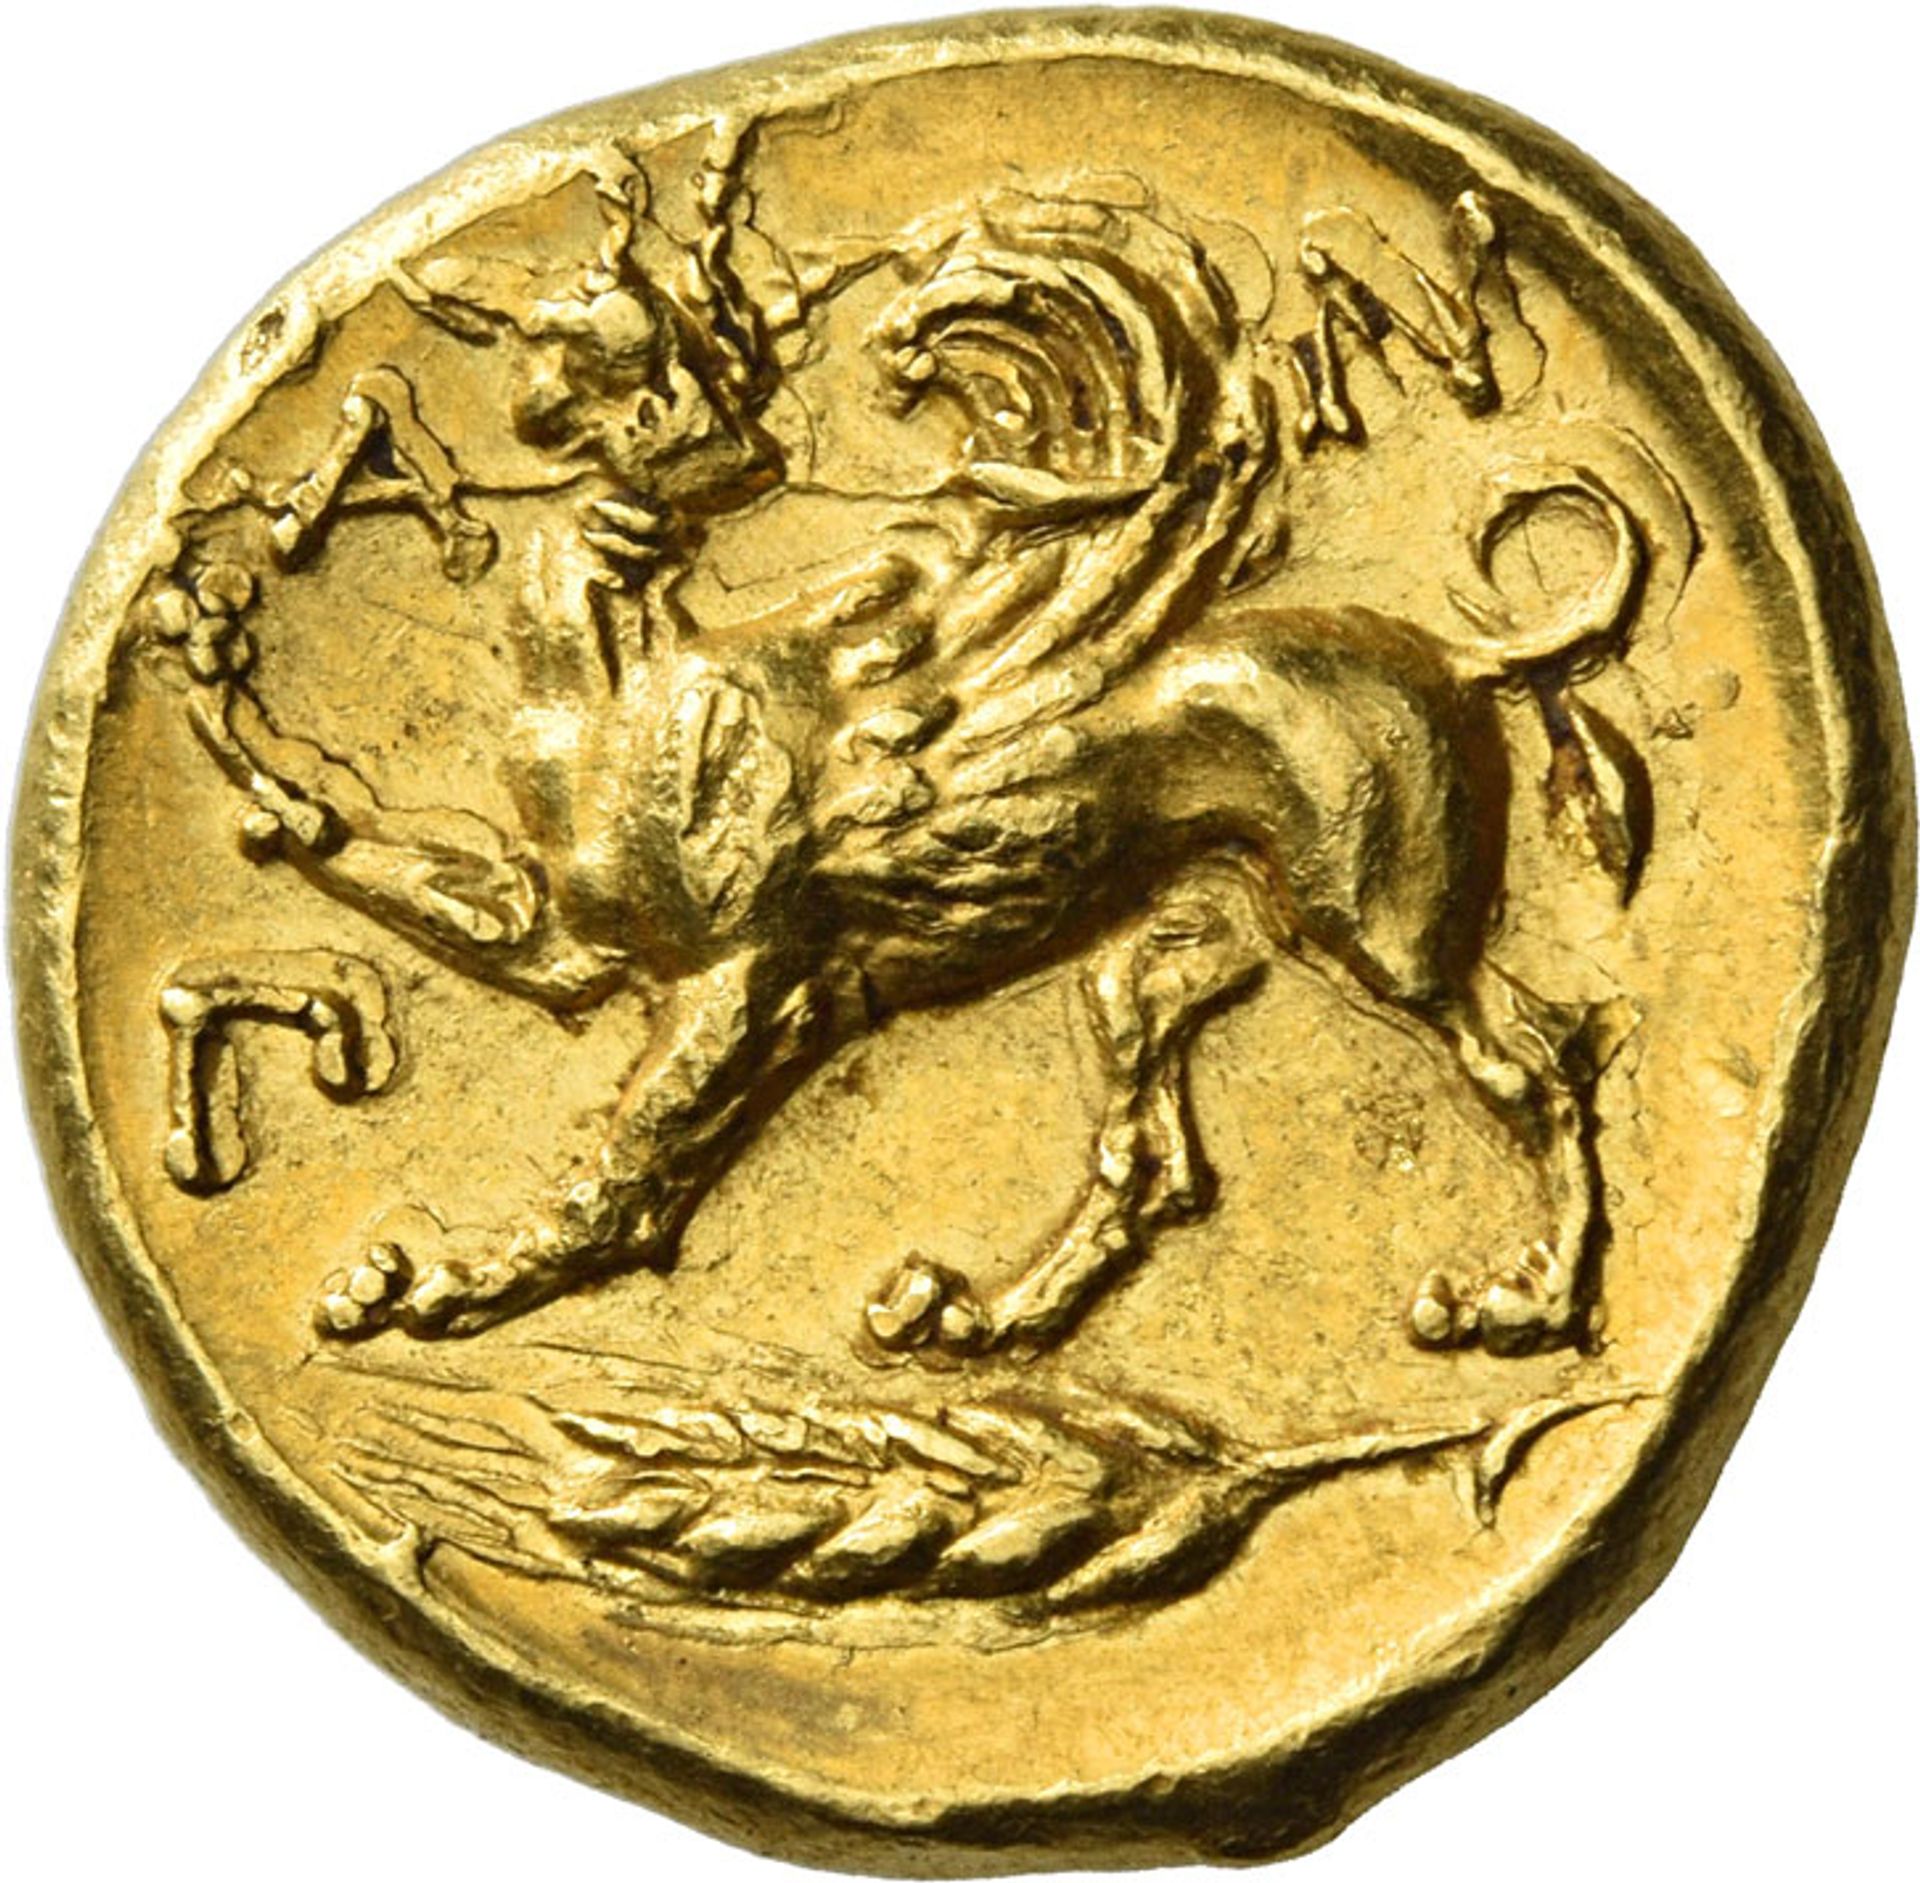 Ένα αρχαίο ελληνικό χρυσό νόμισμα από την Κριμαία πωλήθηκε για 4,8 εκατομμύρια λίρες